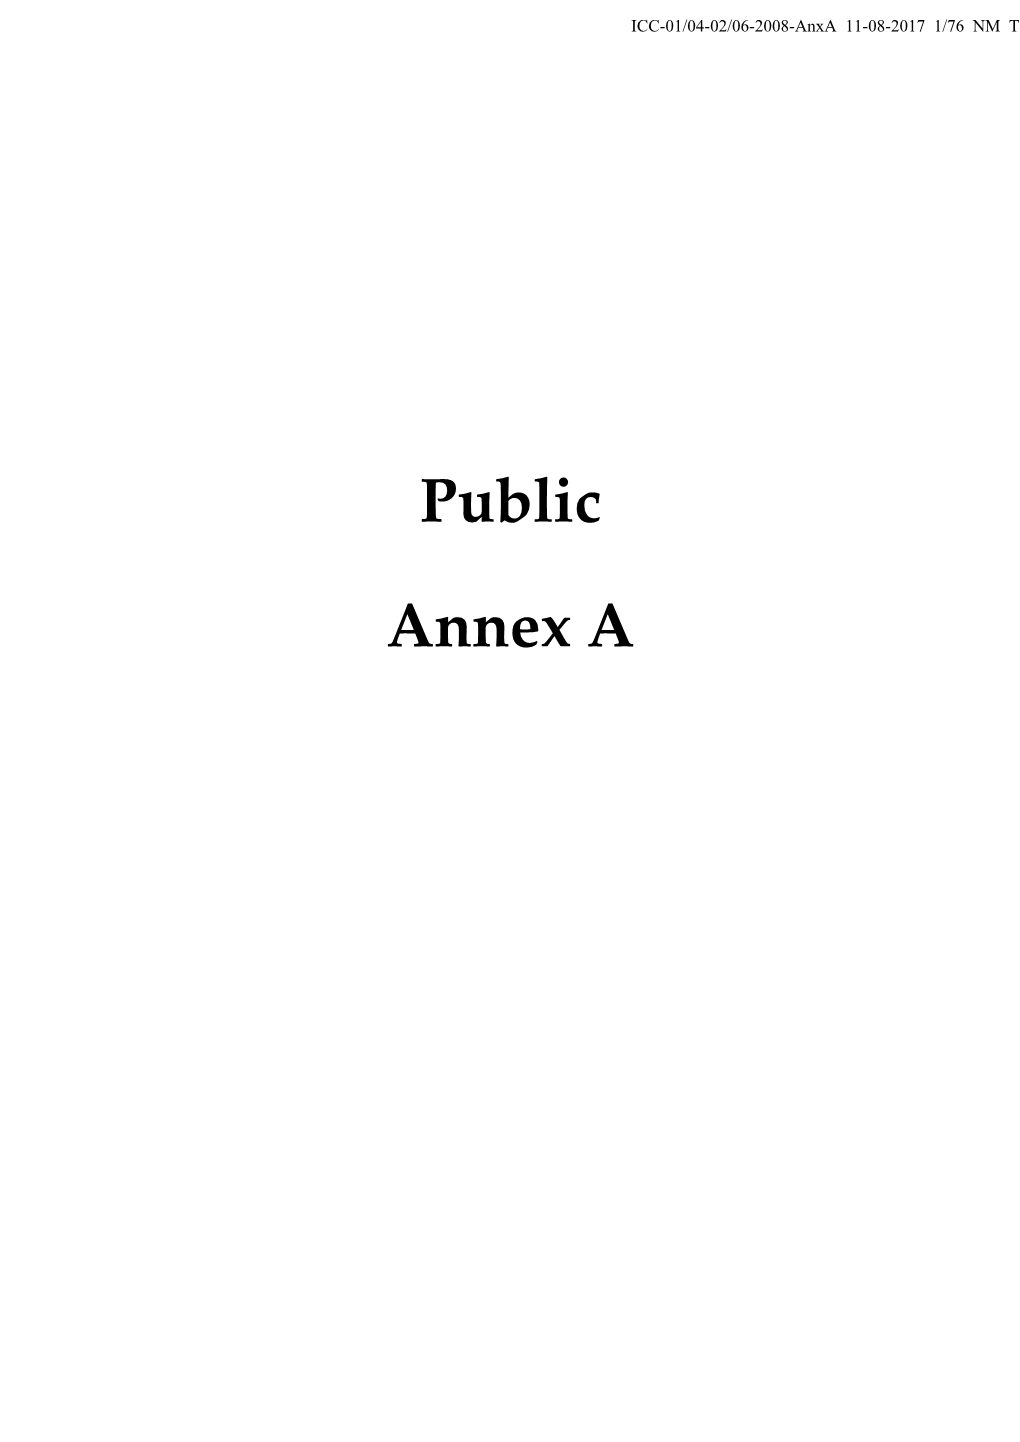 Public Annex A